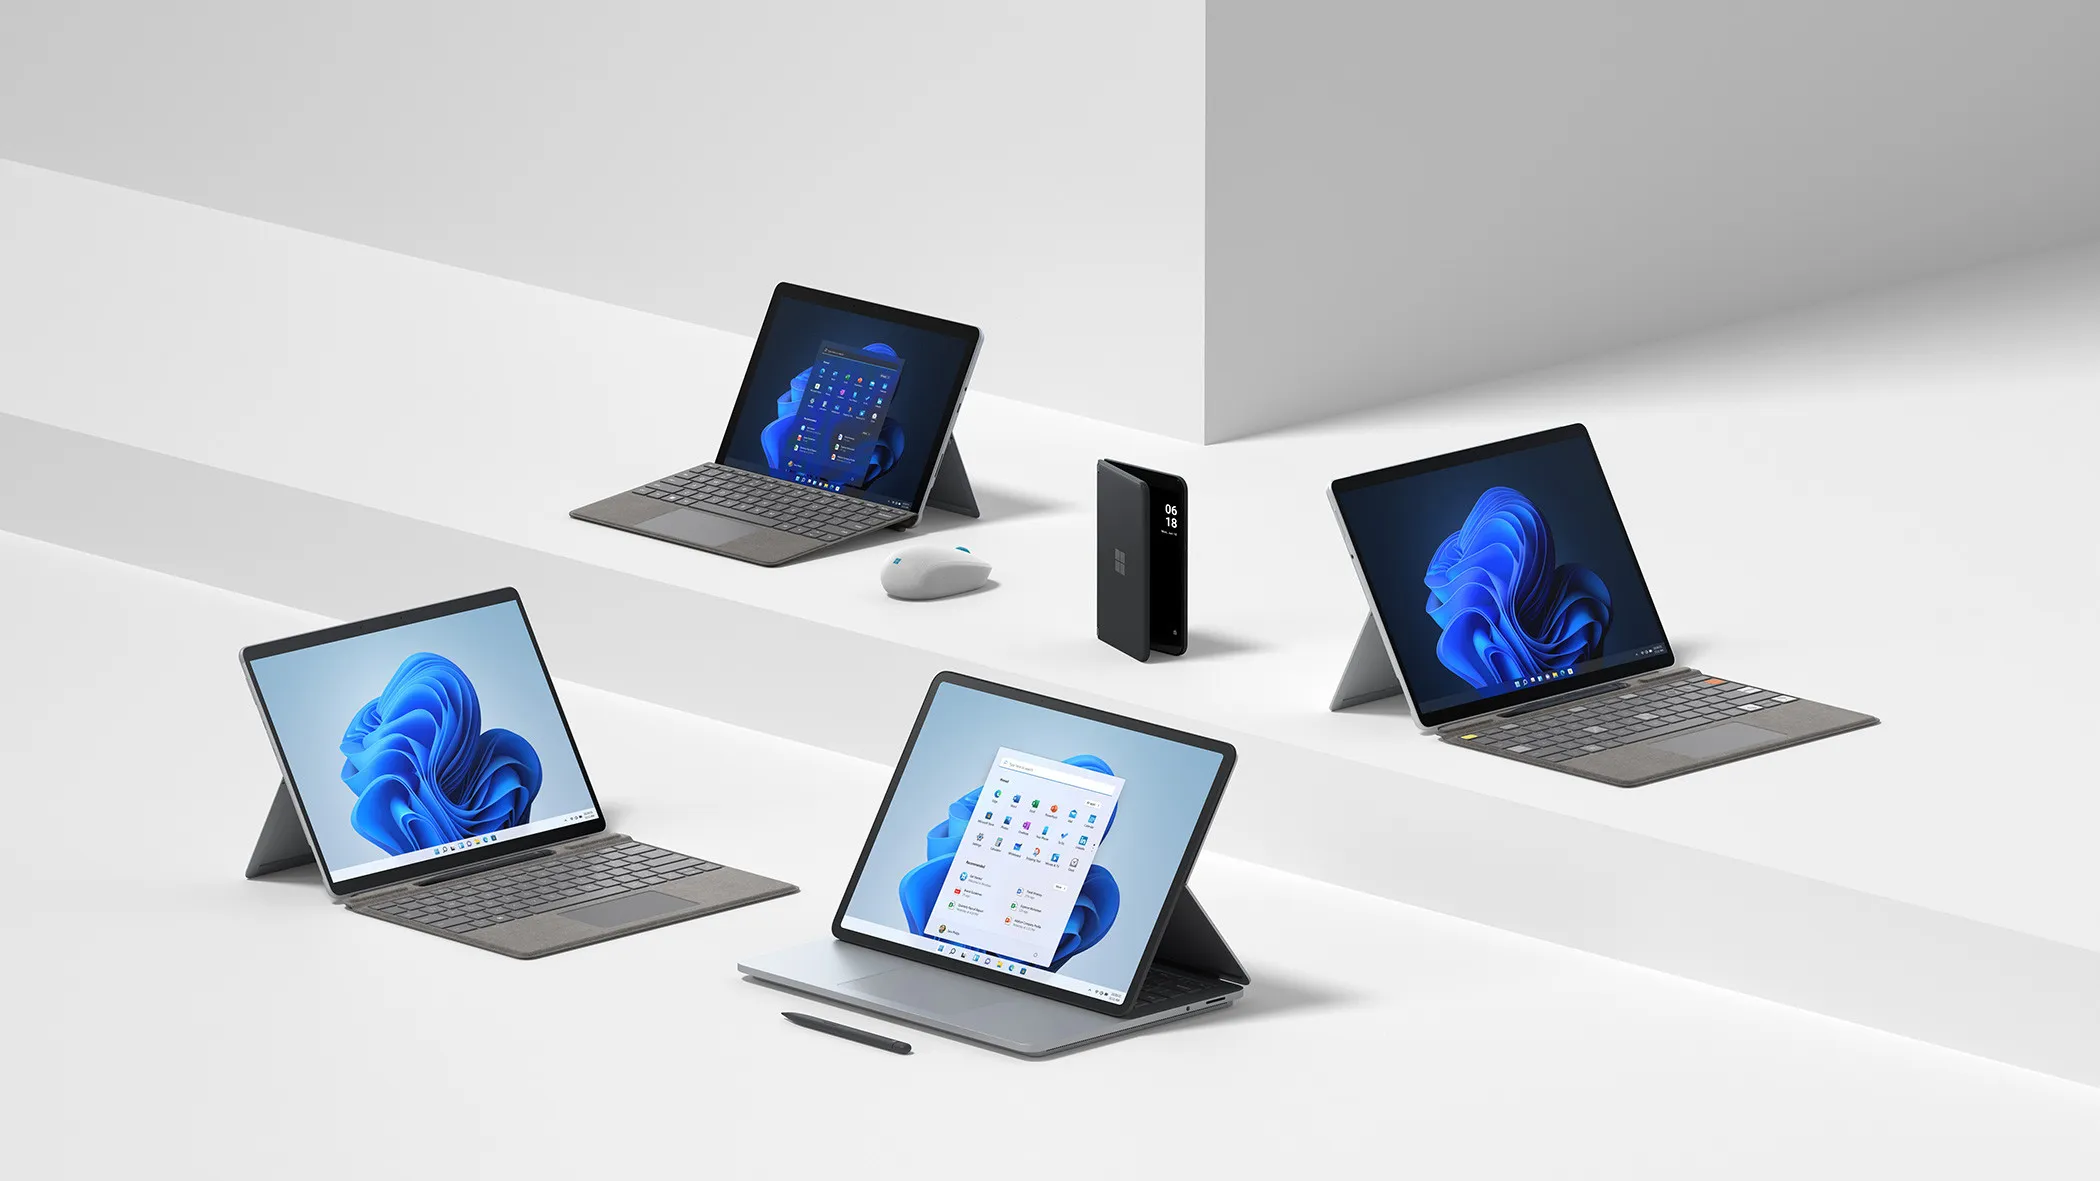 Dispositivos Surface Pro 8 Laptop Studio Go 3 Pro X e Duo 2 colocados em um fundo branco